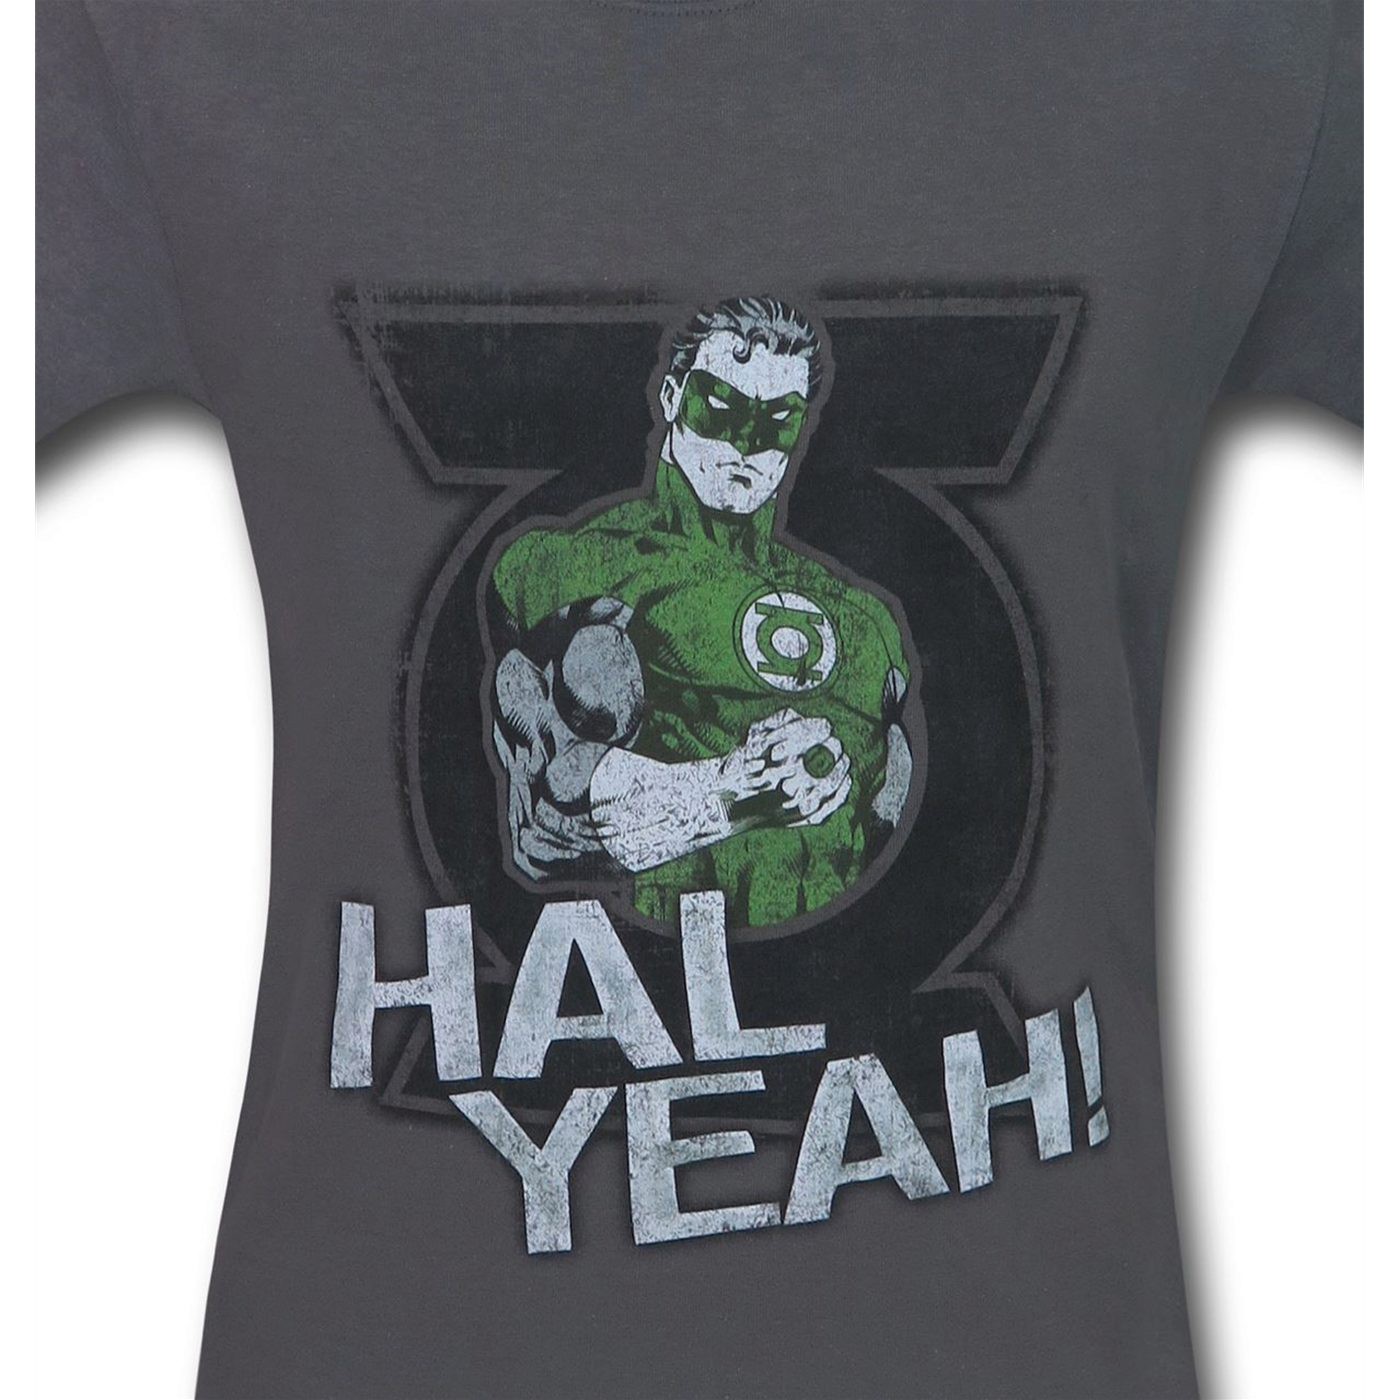 Green Lantern Hal Yeah! Men's T-Shirt